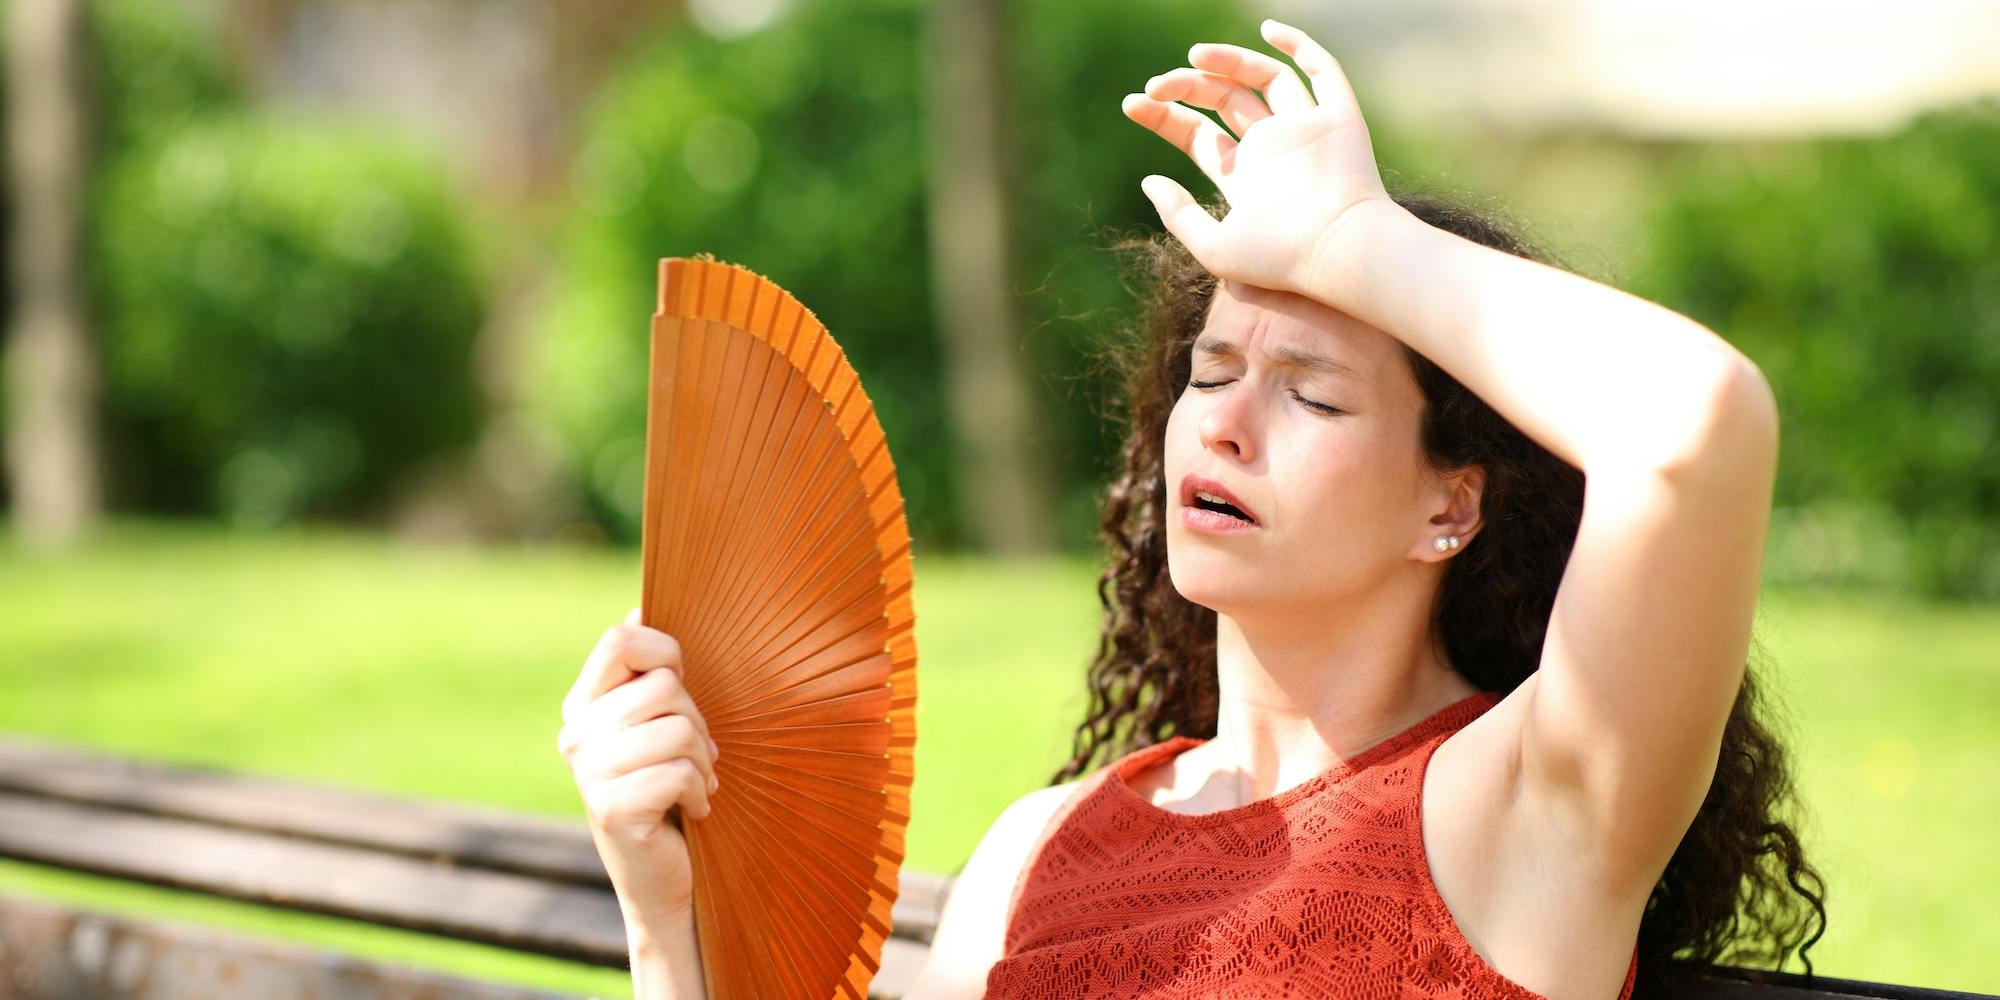 Woman in a park suffering heat stroke fanning herself with a red fan.